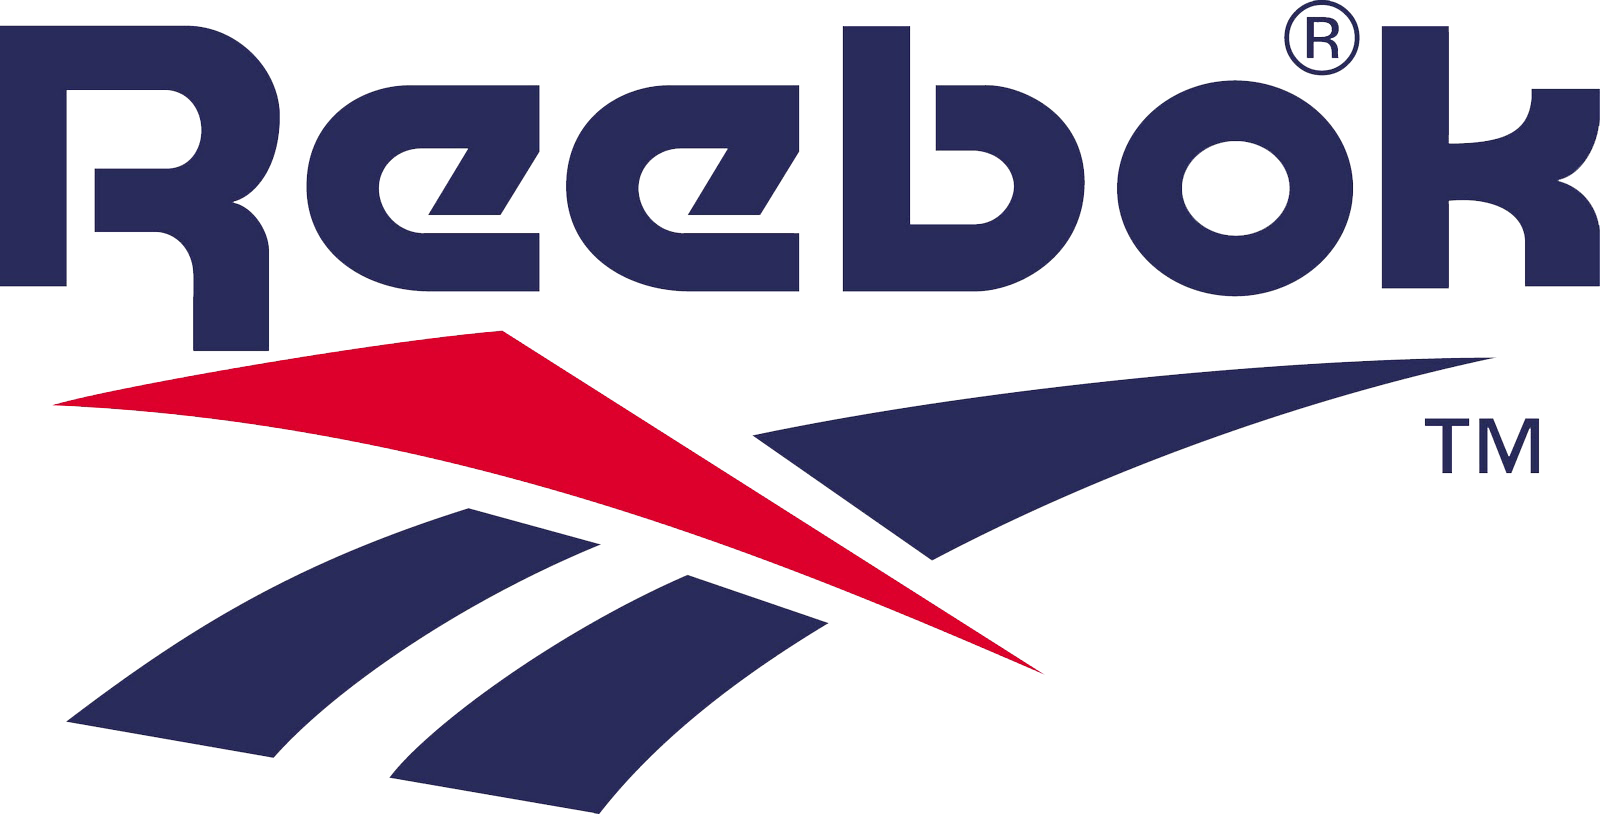 Reebok Logo Image PNG Image